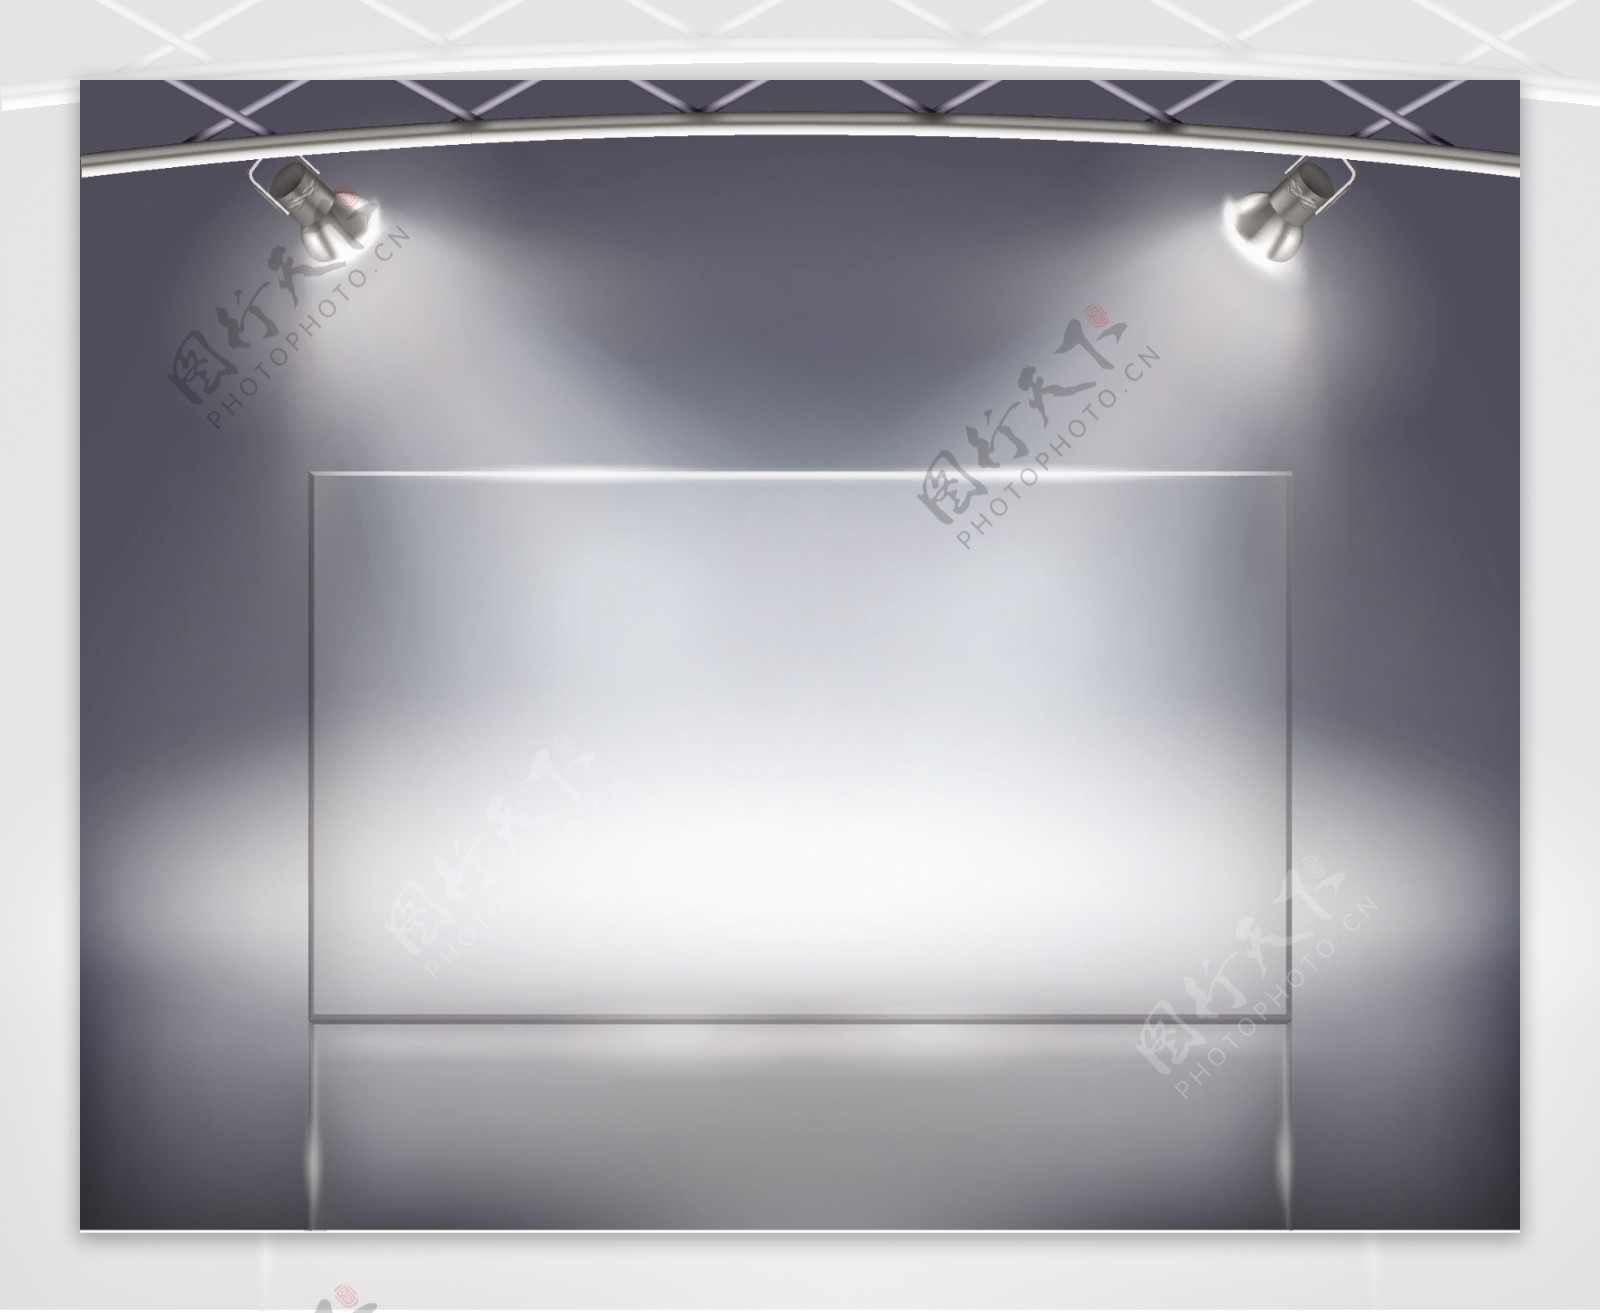 灯光照射展厅墙面设计矢量素材